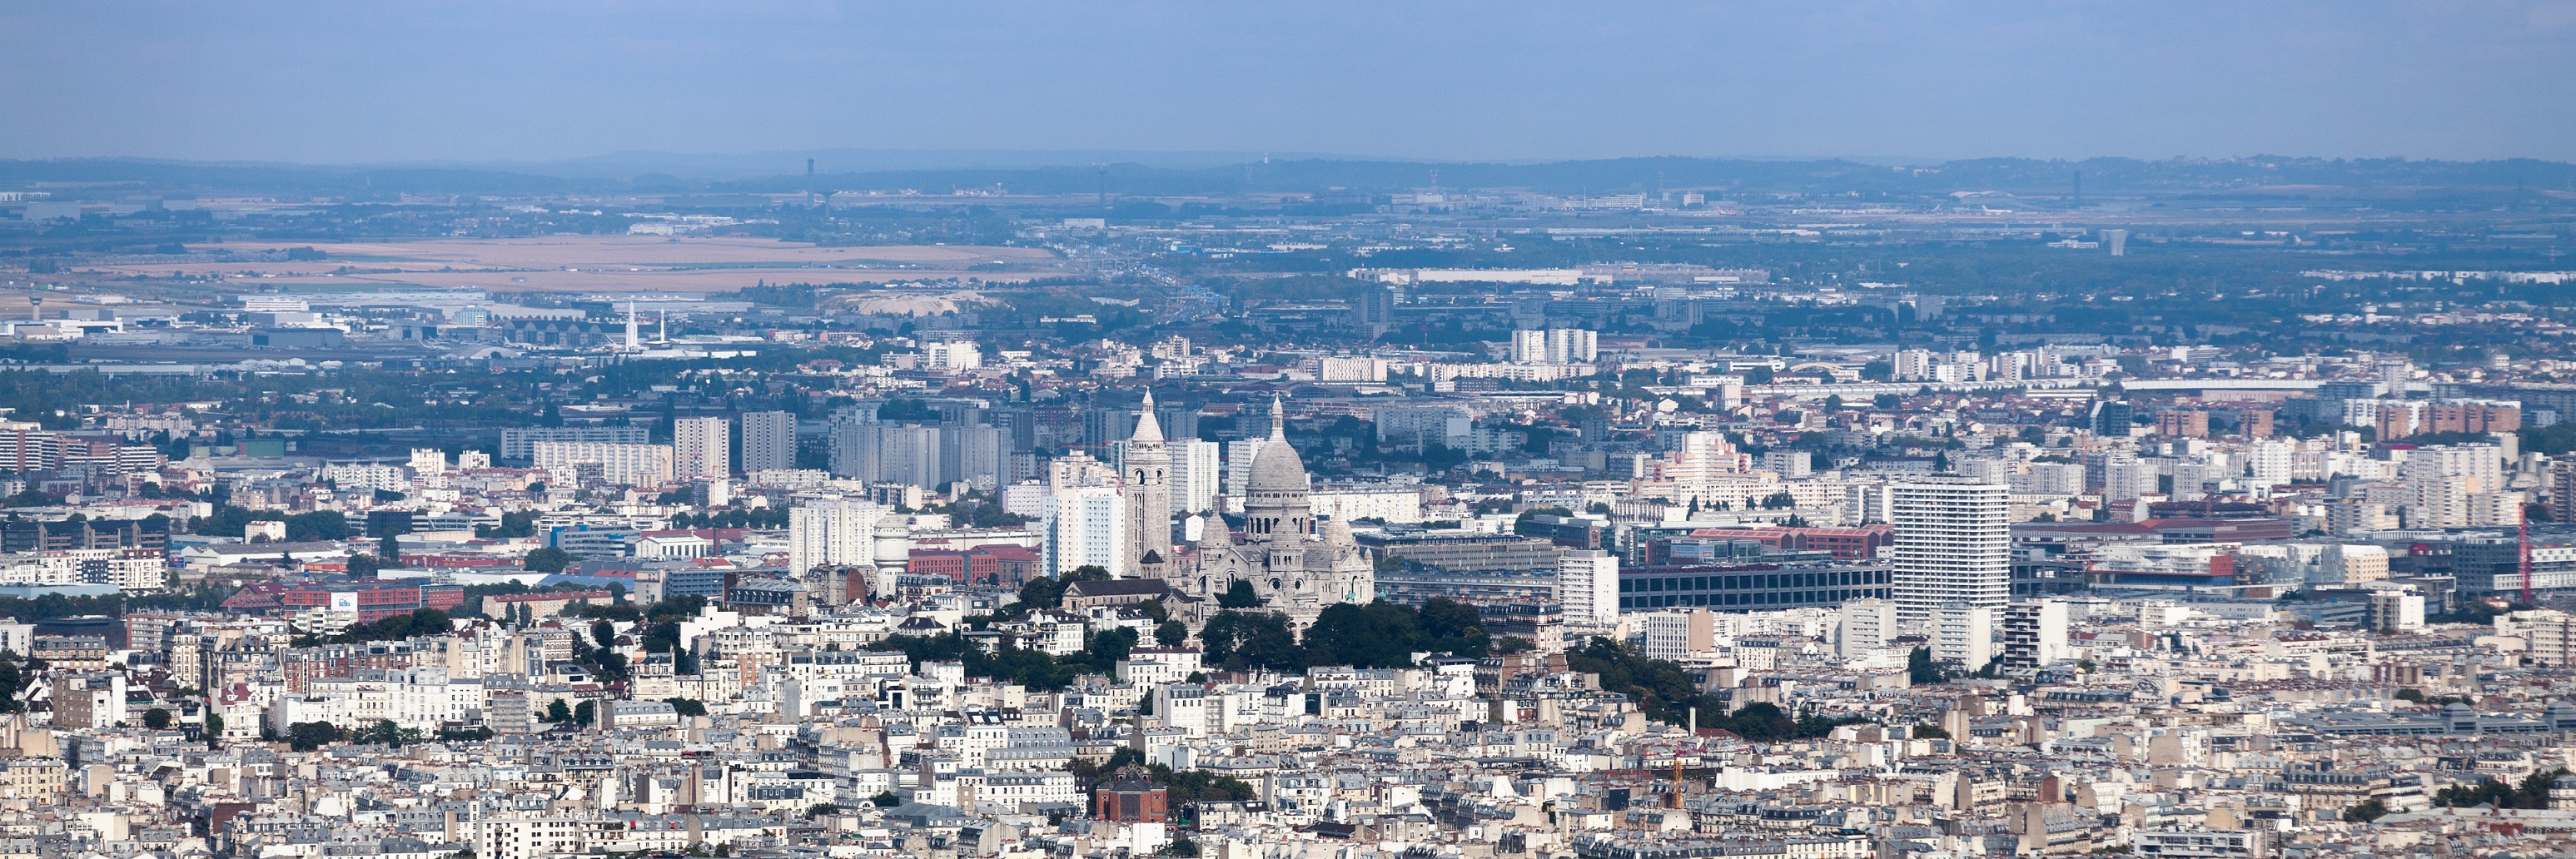 Immobilier: le Grand Paris en passe de transformer l'essai face au Grand Londres